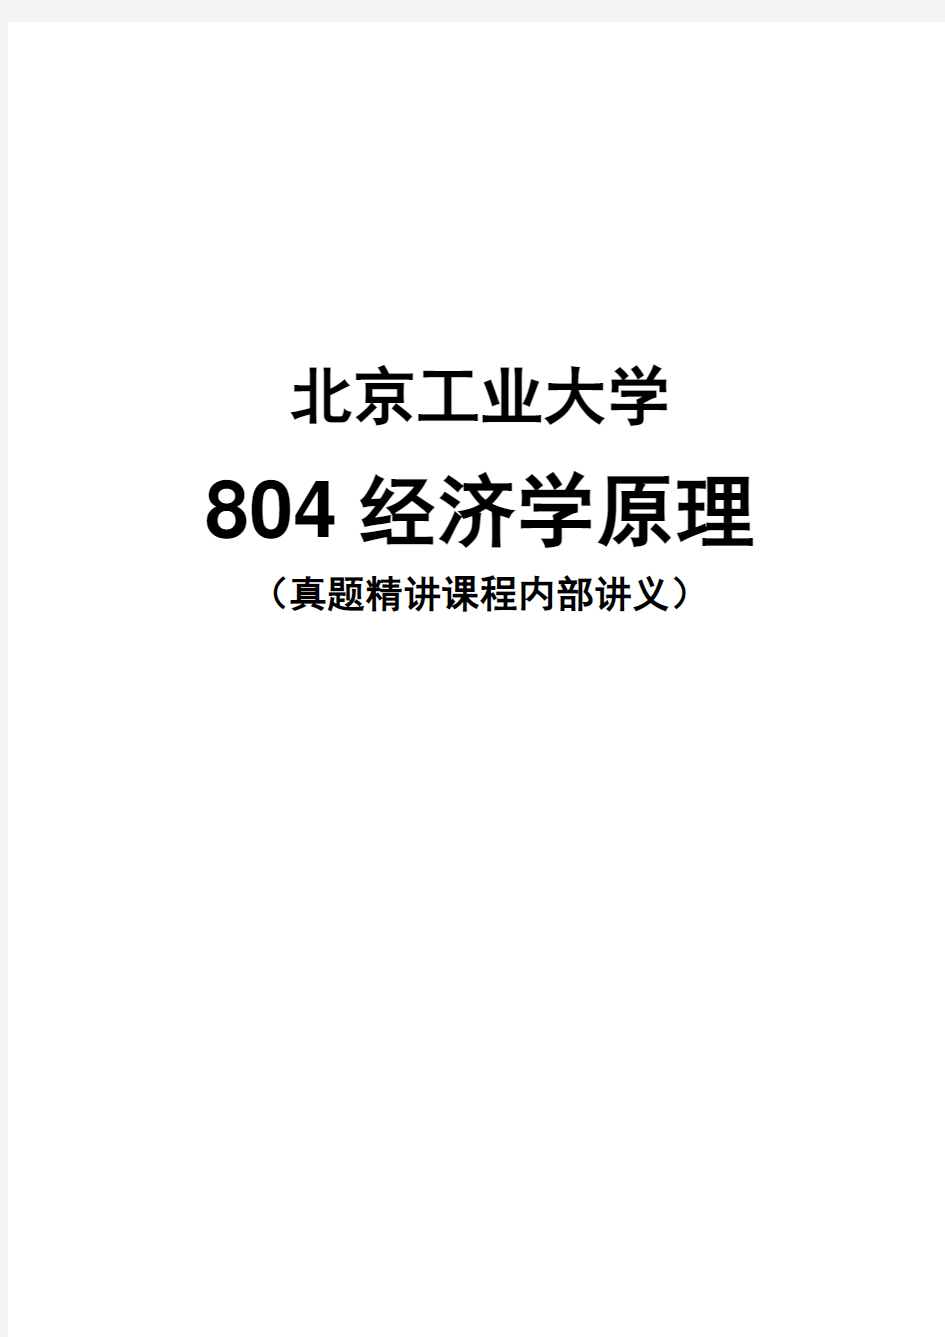 【北京工业大学804经济学原理】16年真题精讲课程讲义